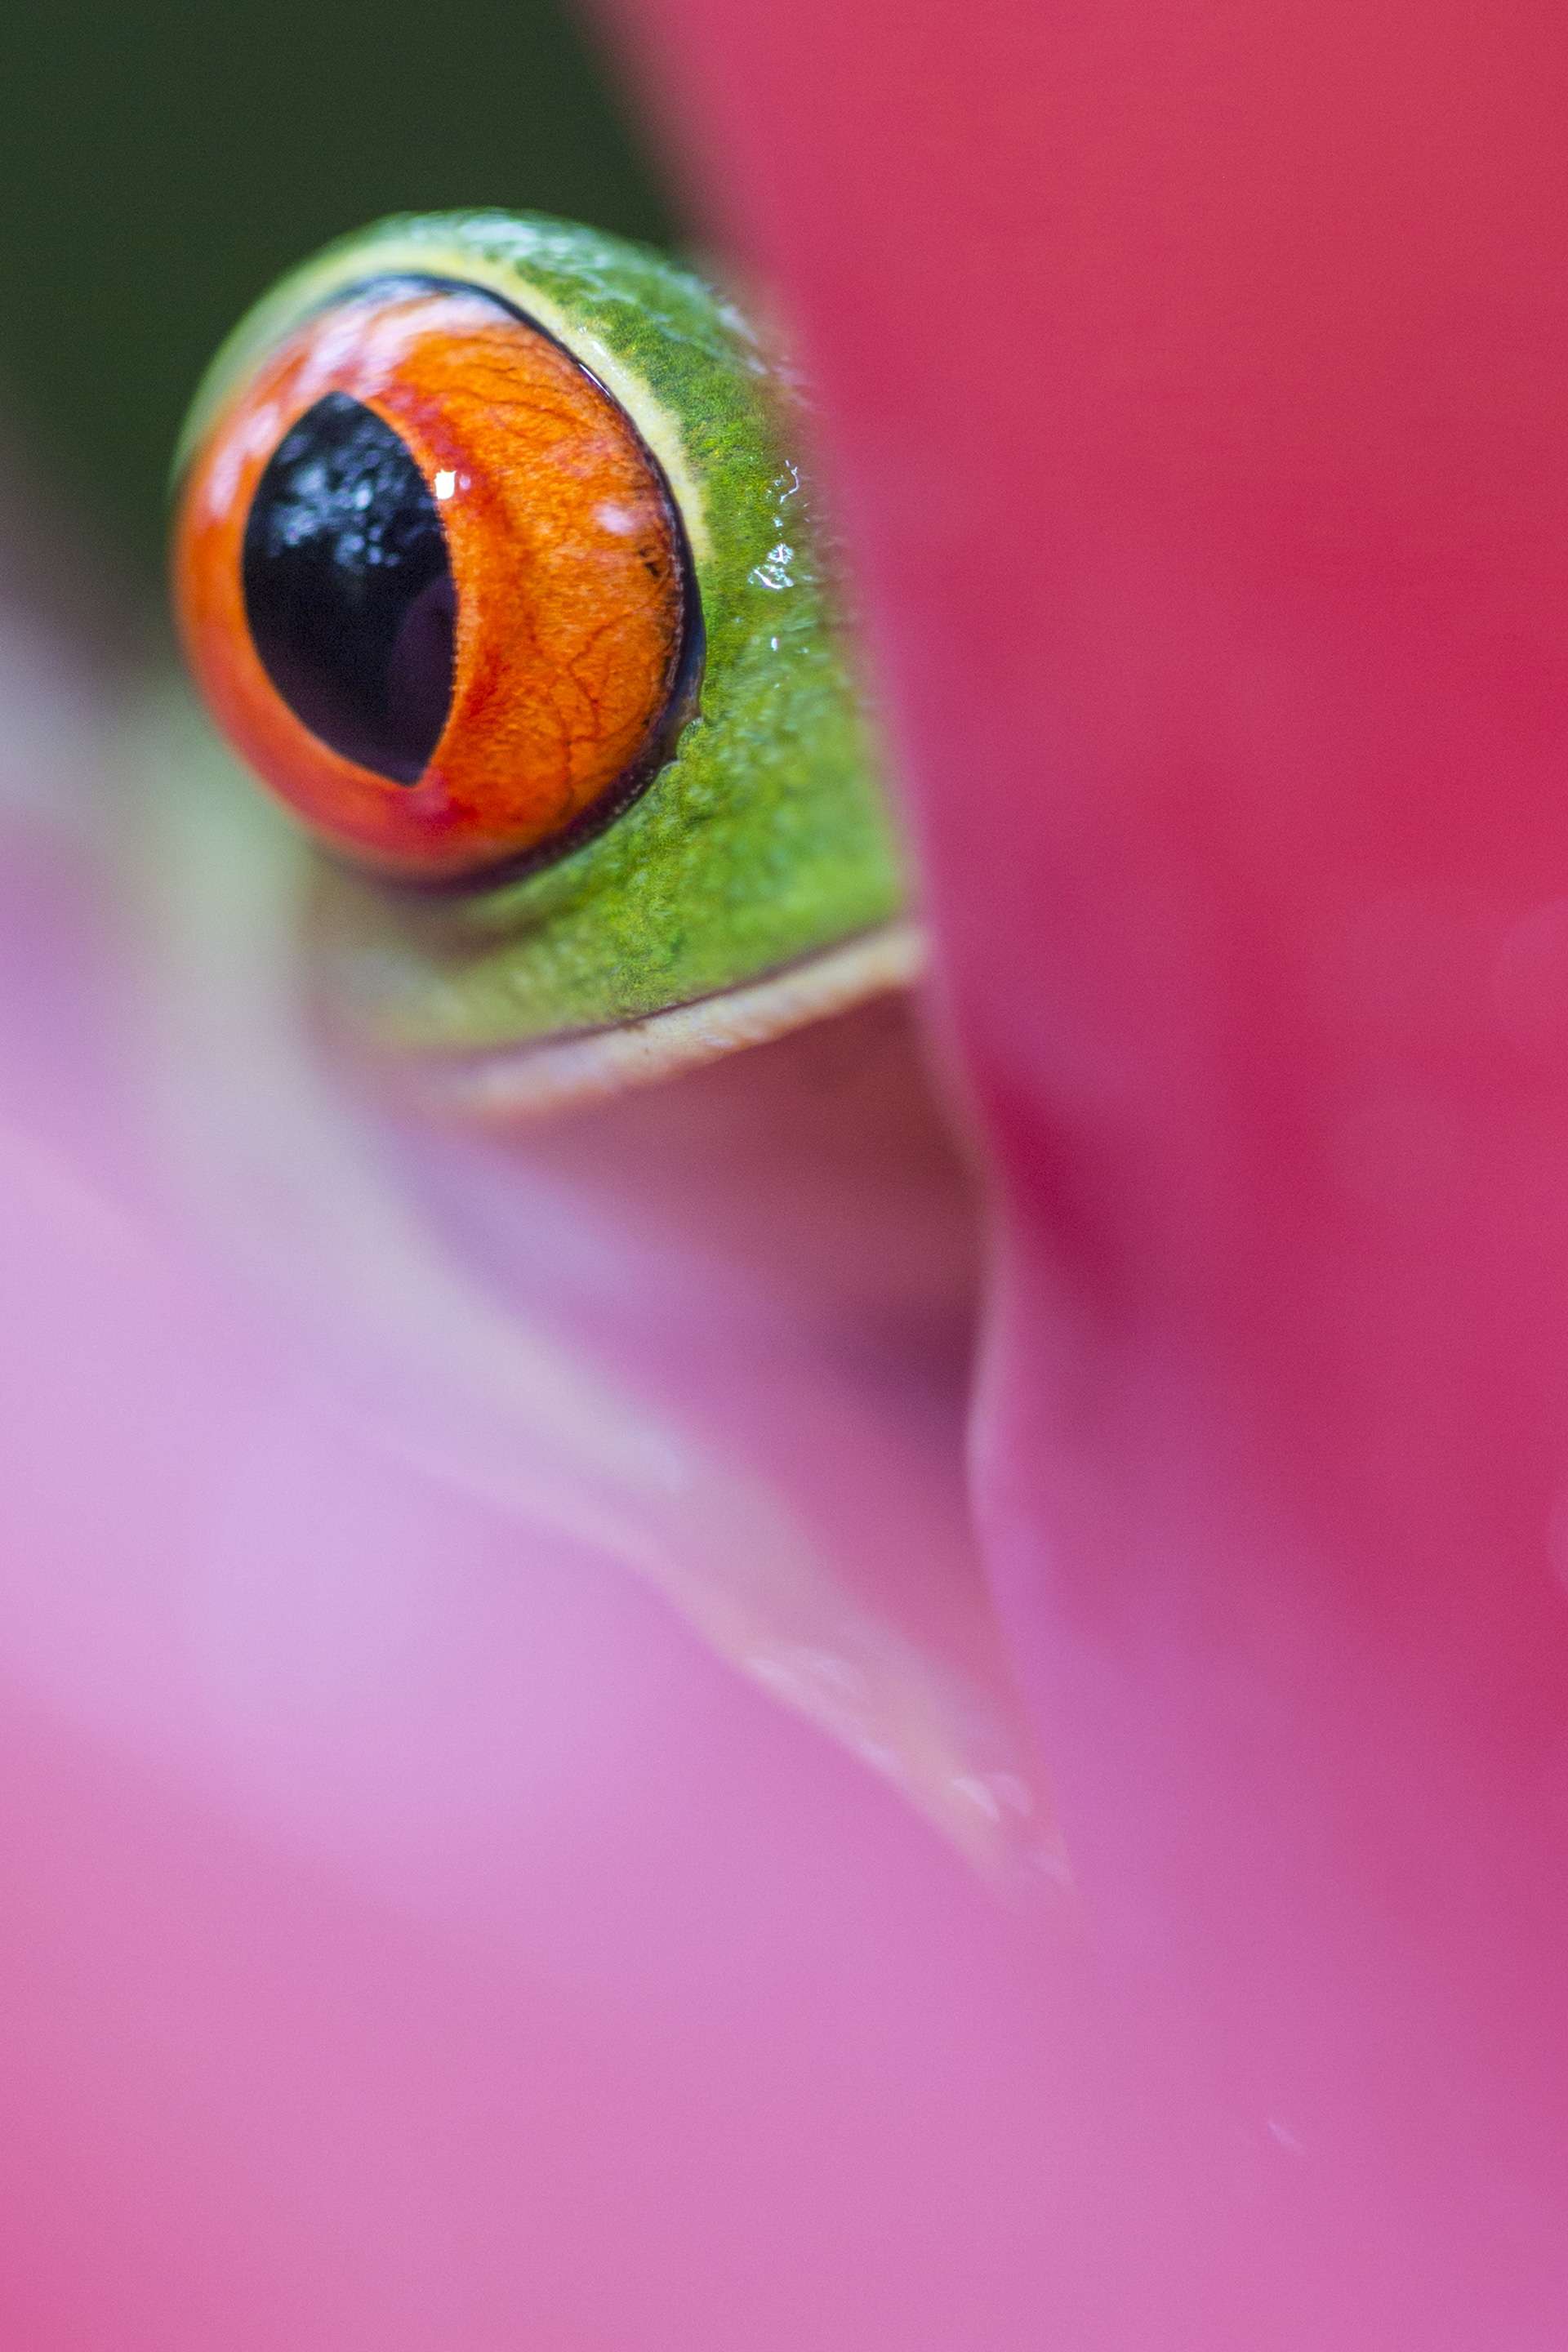 Photographie de Gilles Martin : rainette aux yeux rouges (agalychnis callidryas) du Costa Rica